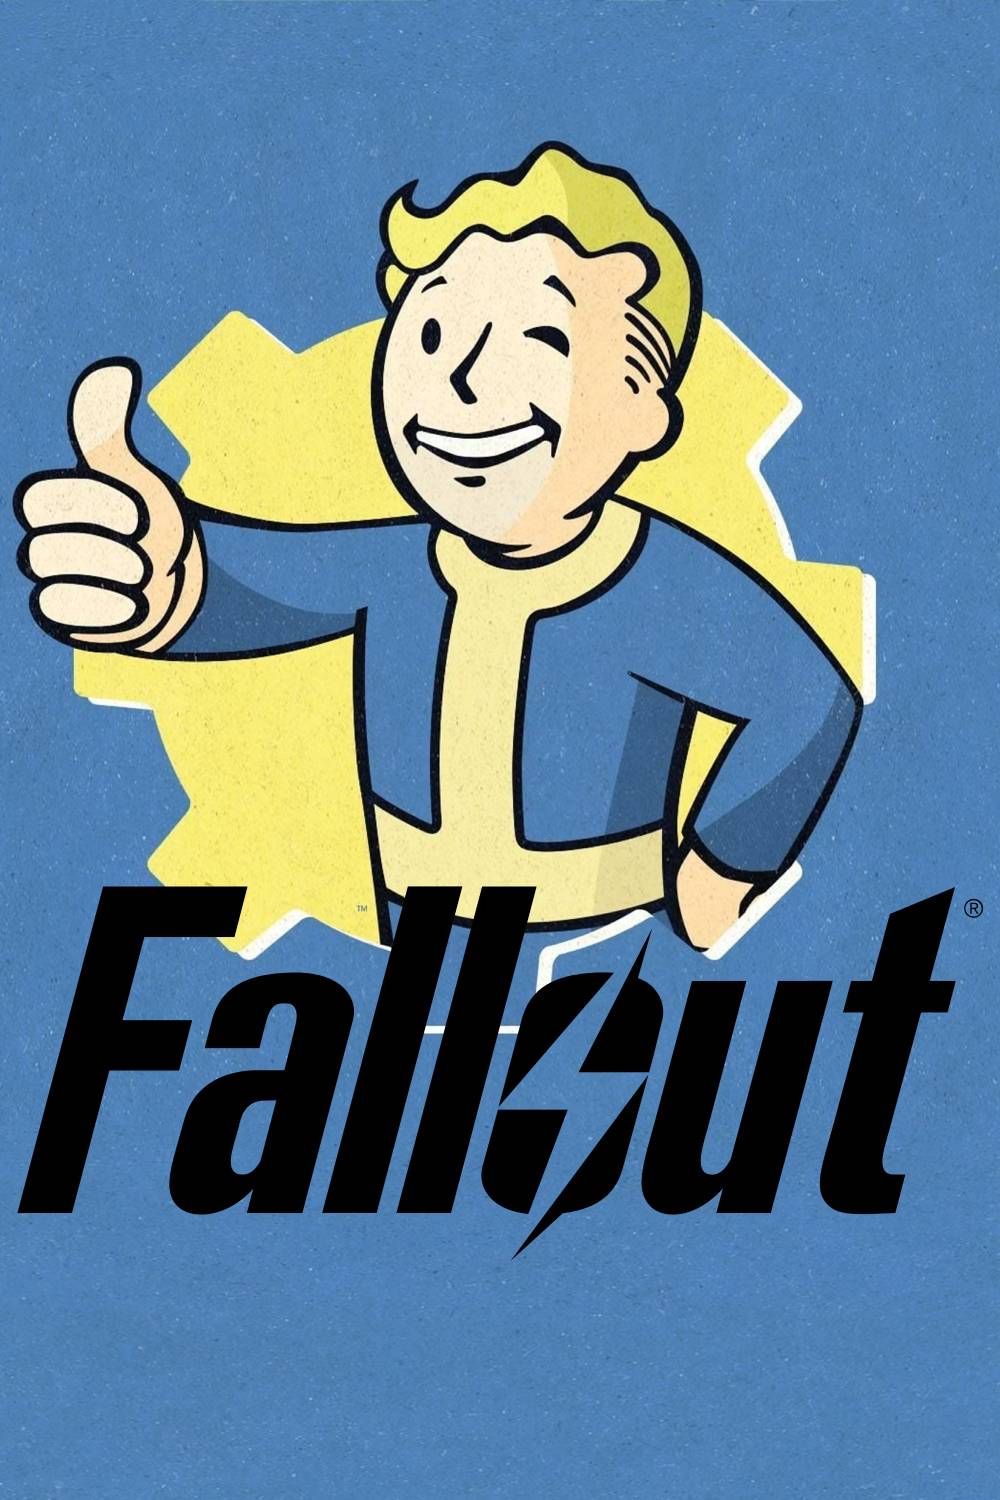 Arte da capa da página de tags da franquia Fallout